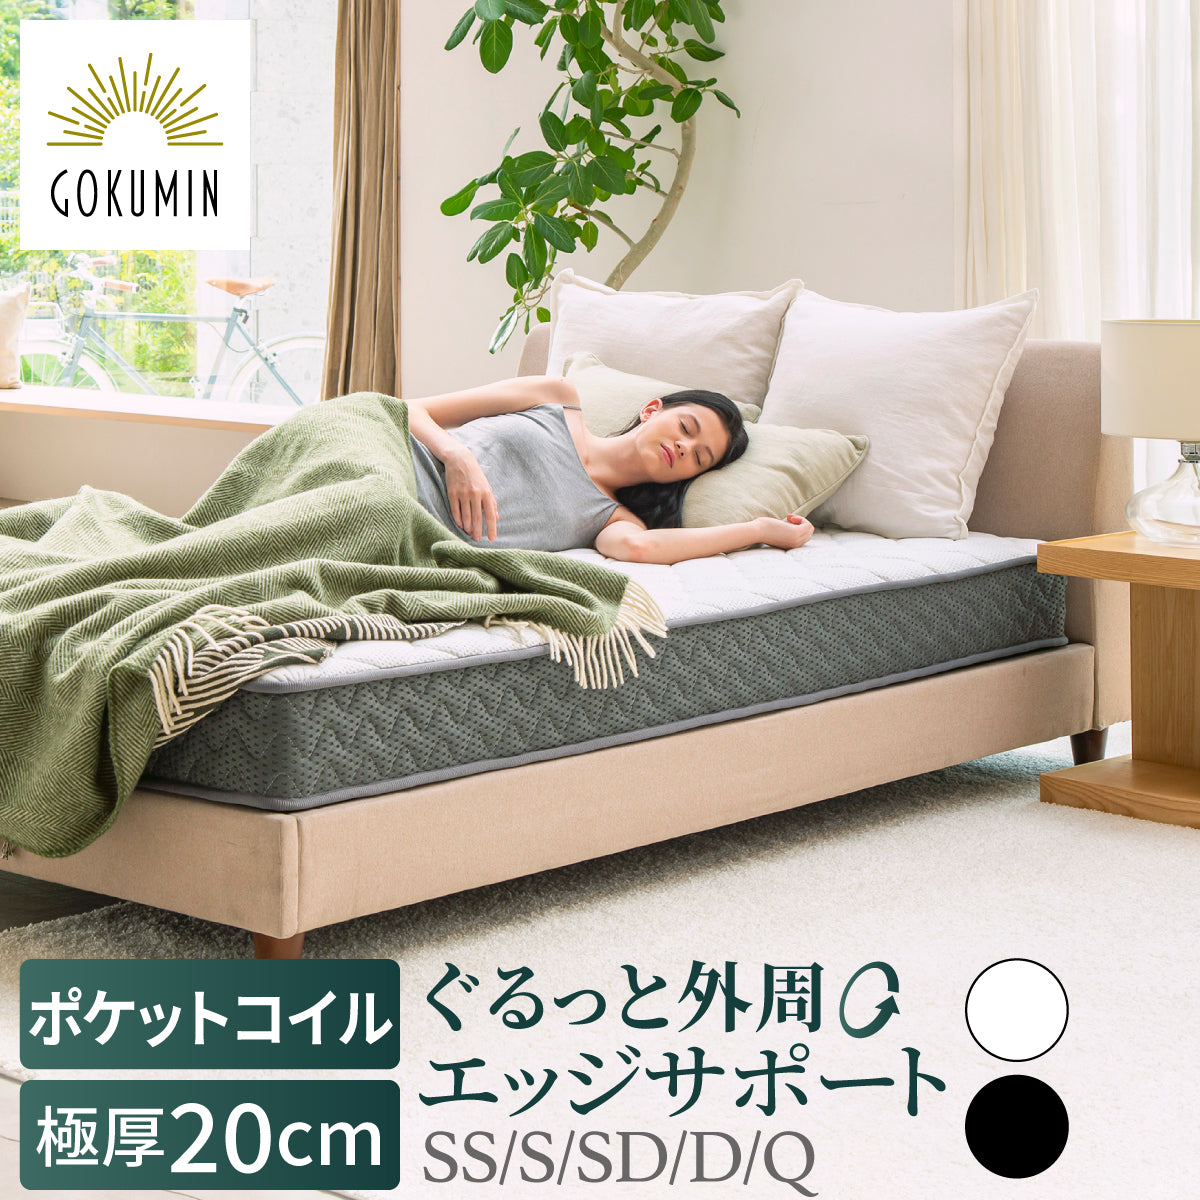 GOKUMIN – GOKUMIN公式直営店